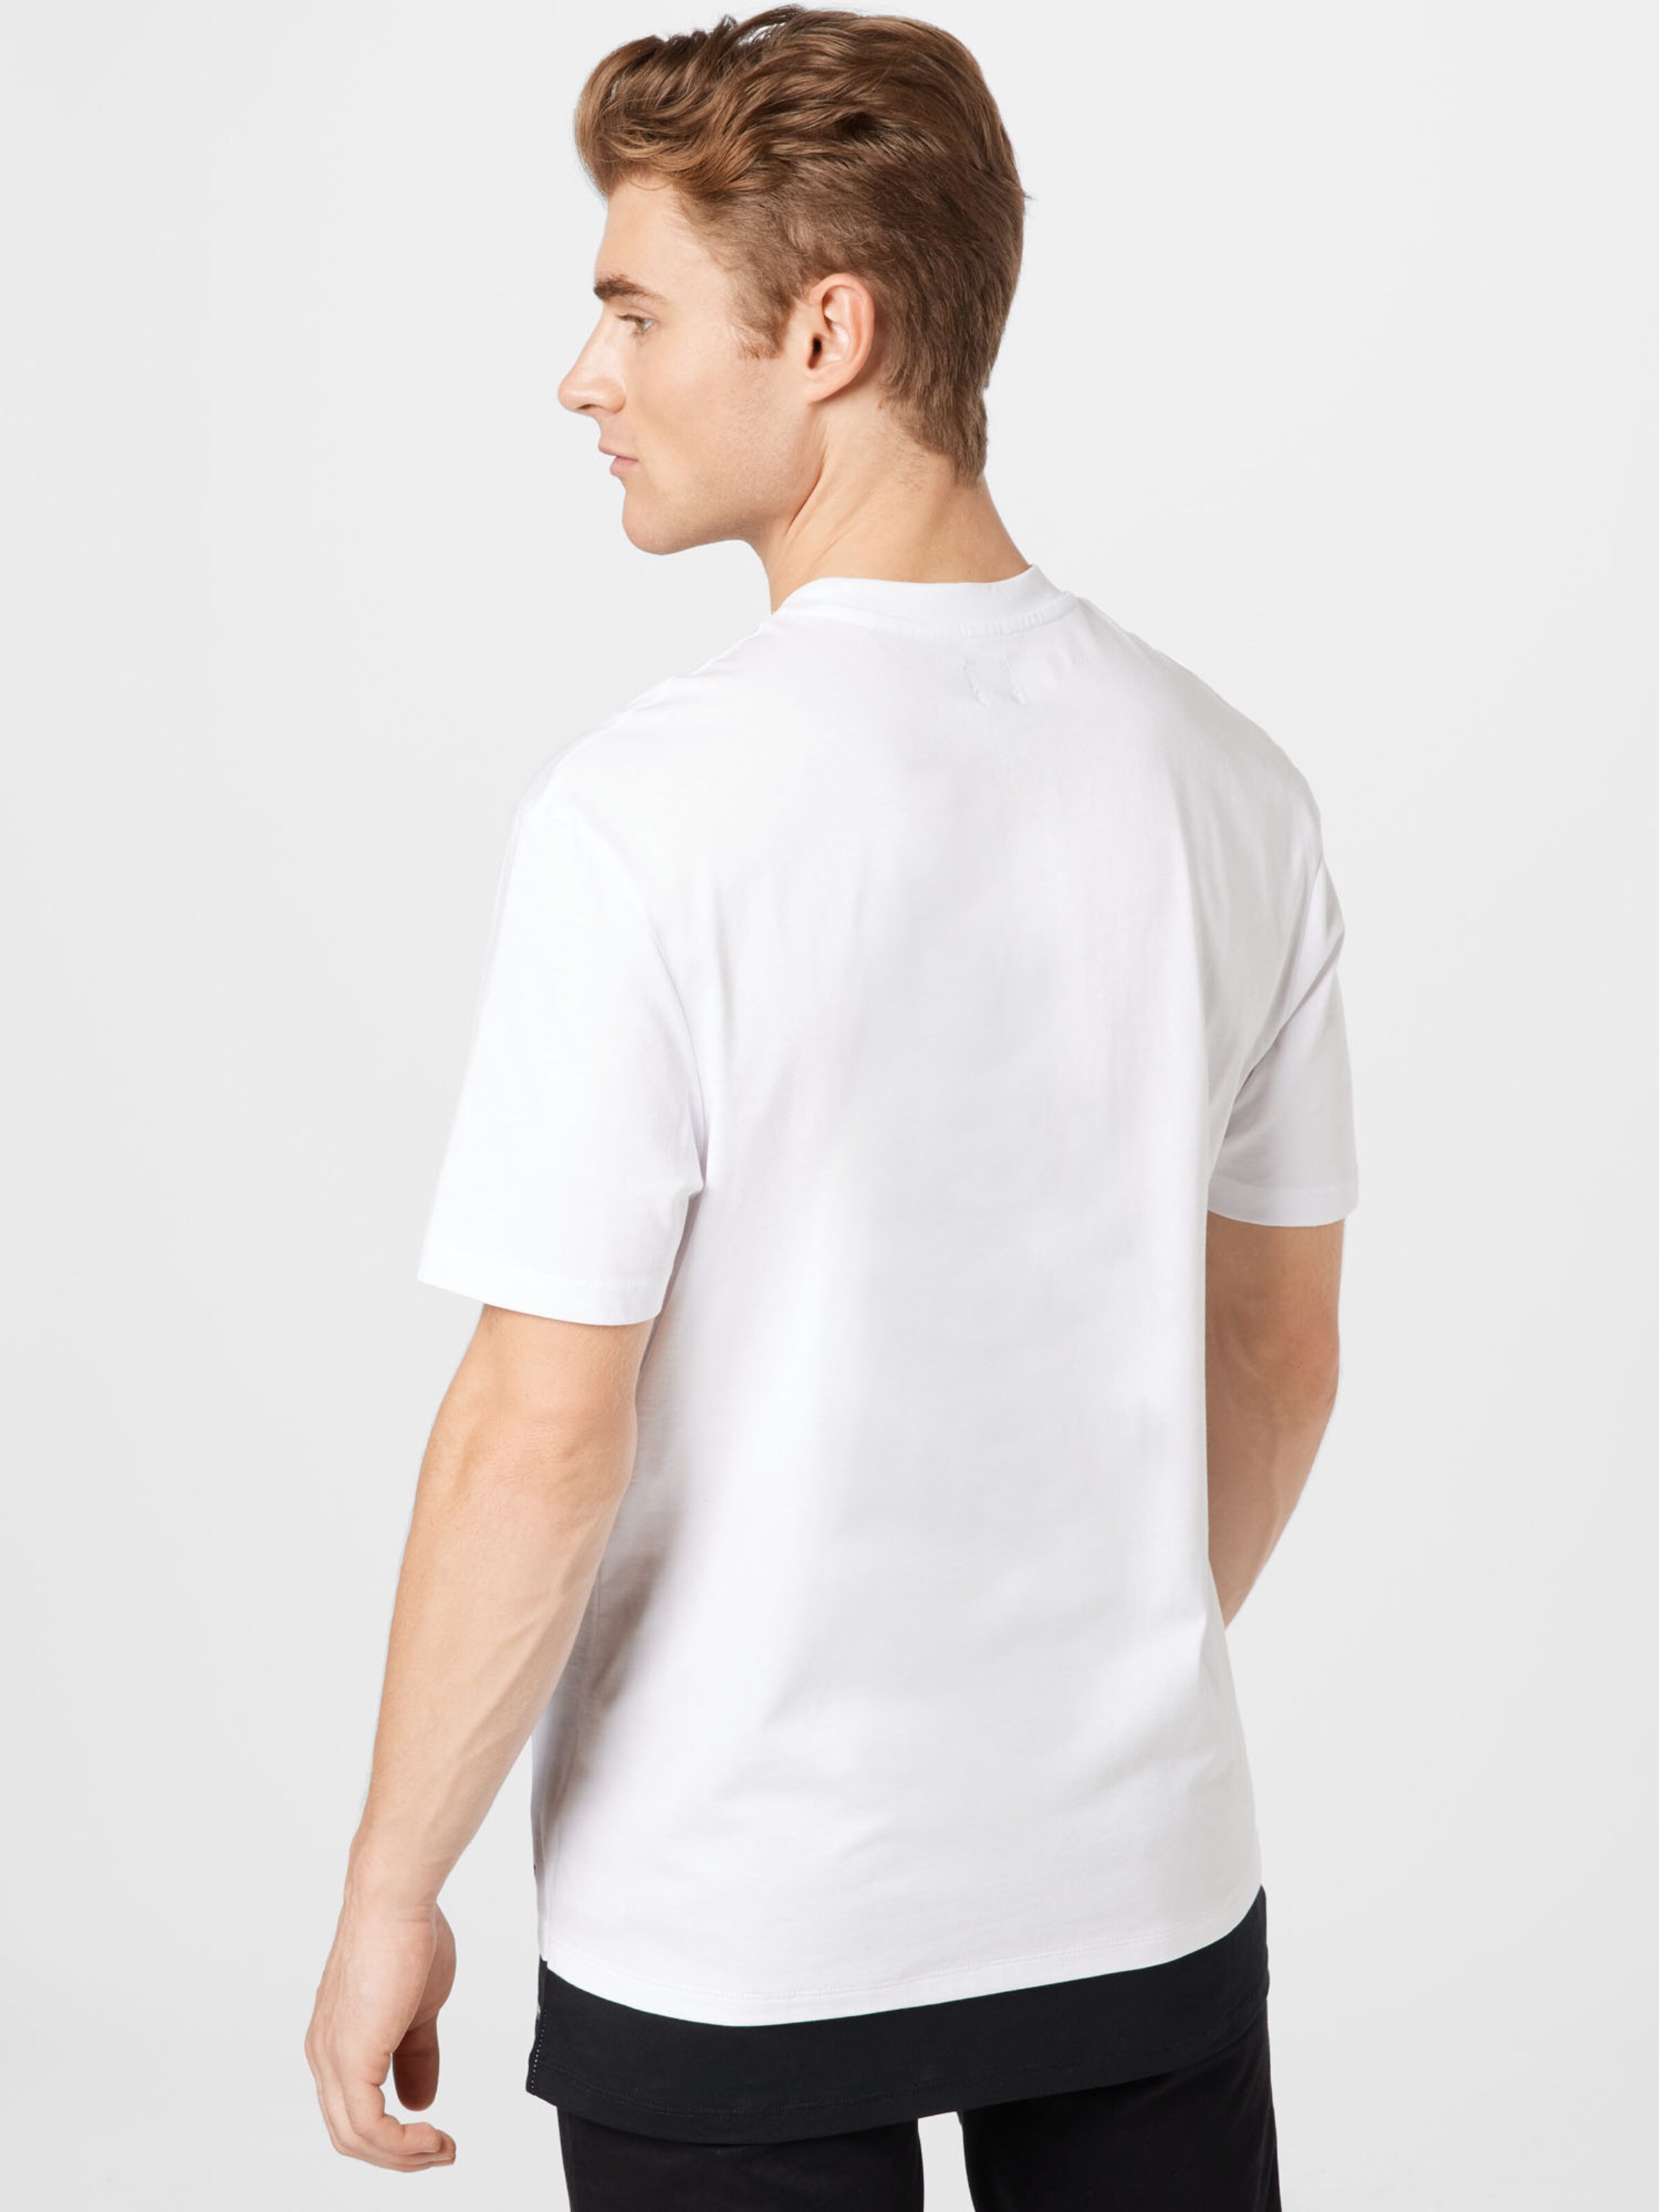 Männer Shirts River Island T-Shirt in Weiß - HY19302